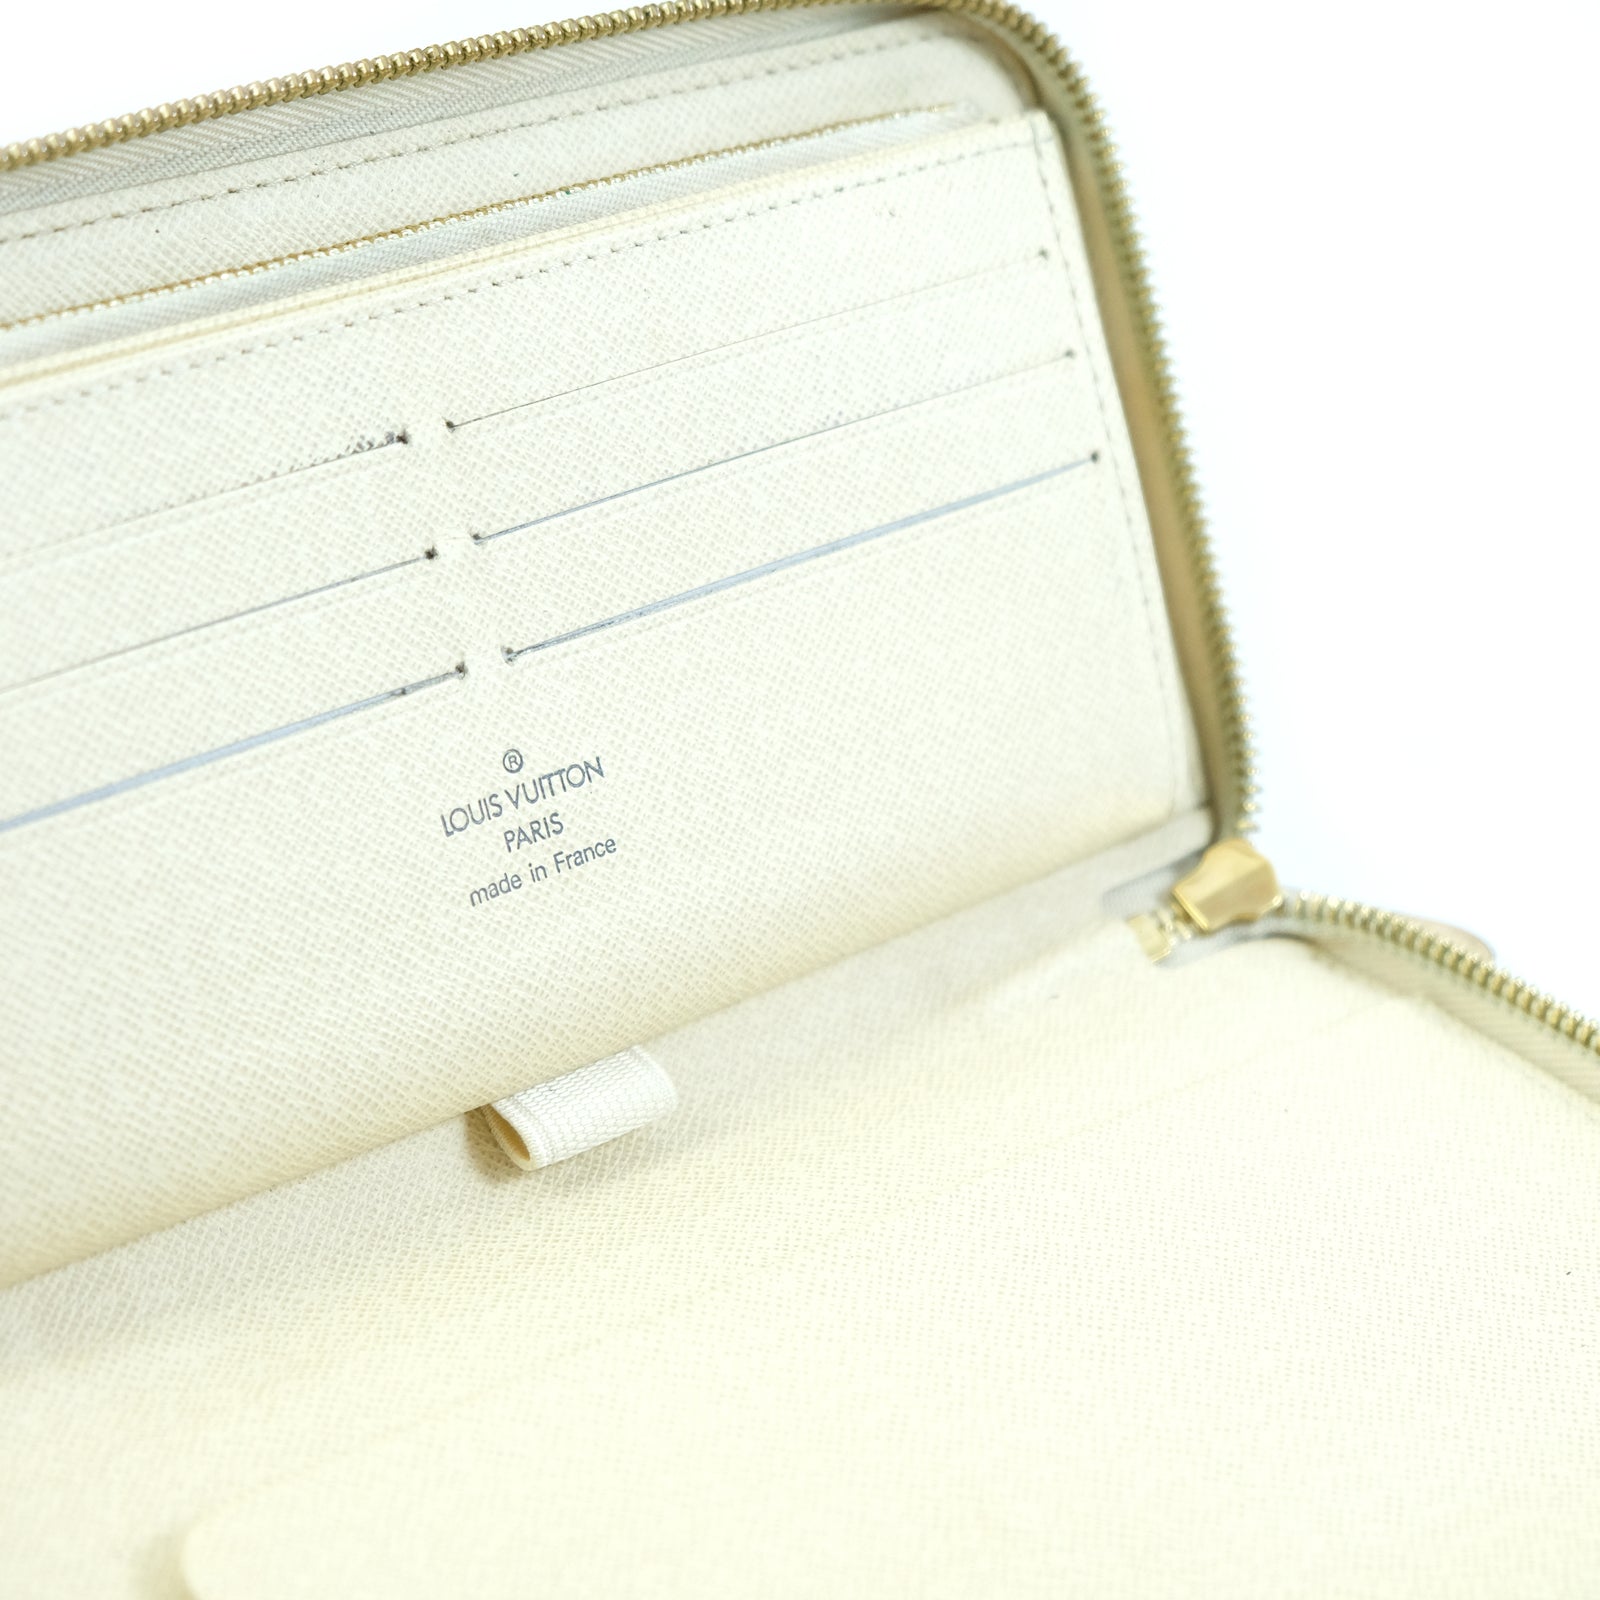 Authentic Louis Vuitton Damier Azur Canvas Zippy Organizer Wallet